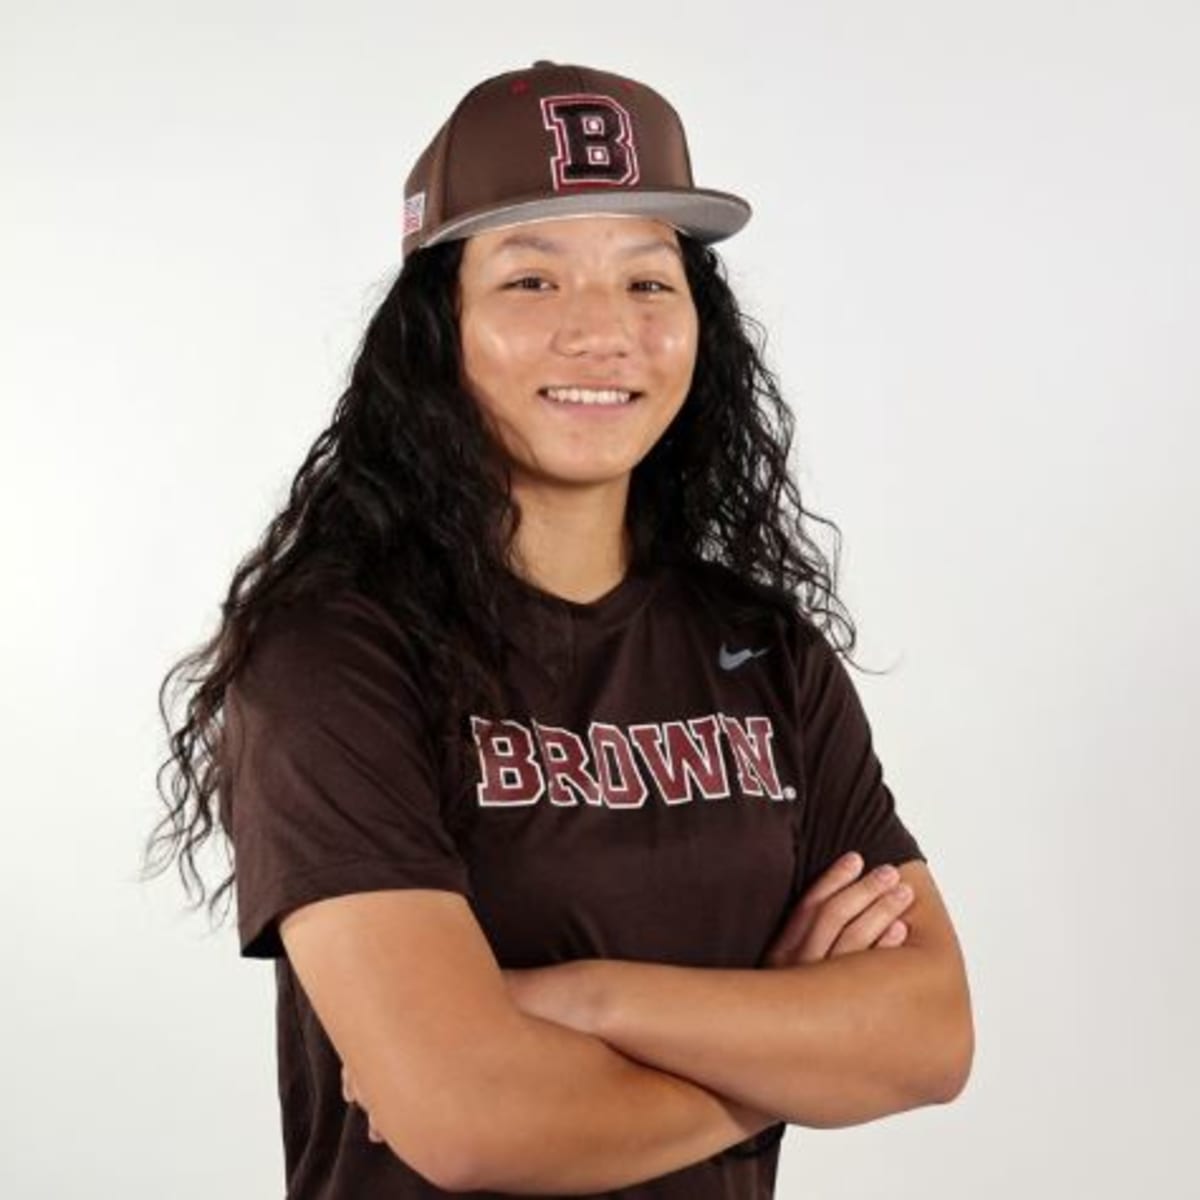 Female Brown University baseball player Olivia Pichardo speaks out